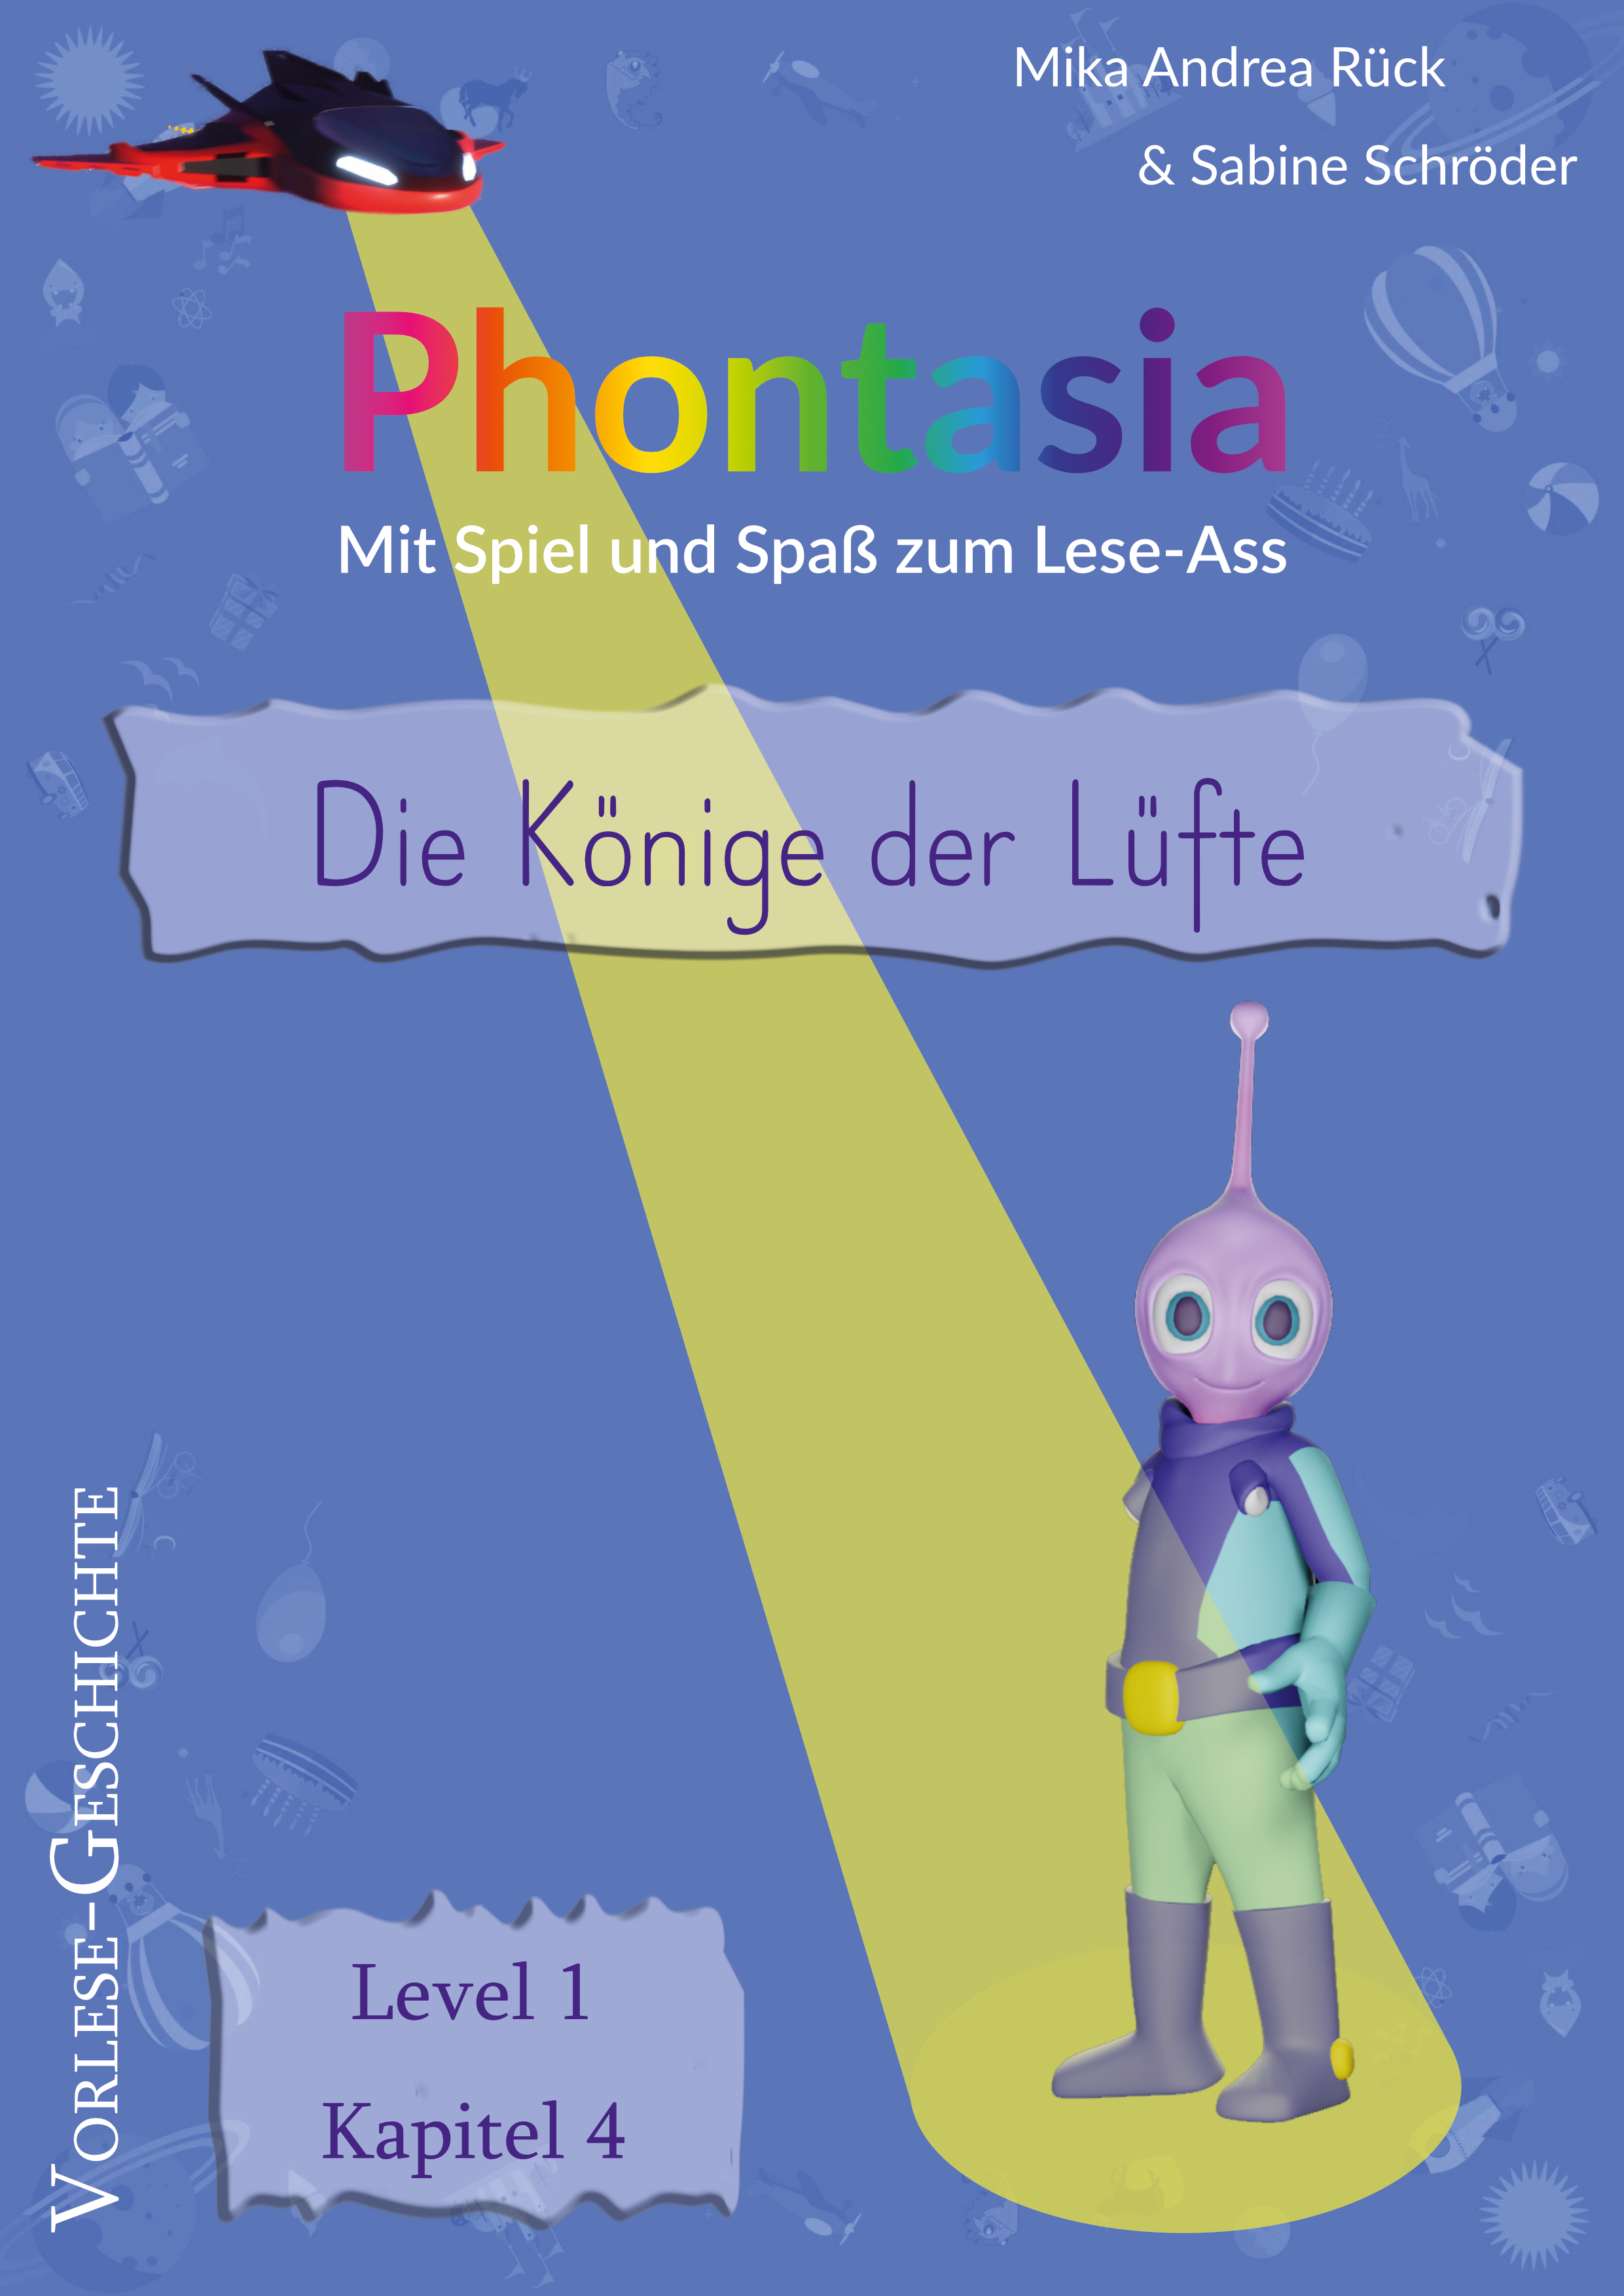 Phontasia: Vorlese-Geschichte „Die Könige der Lüfte„